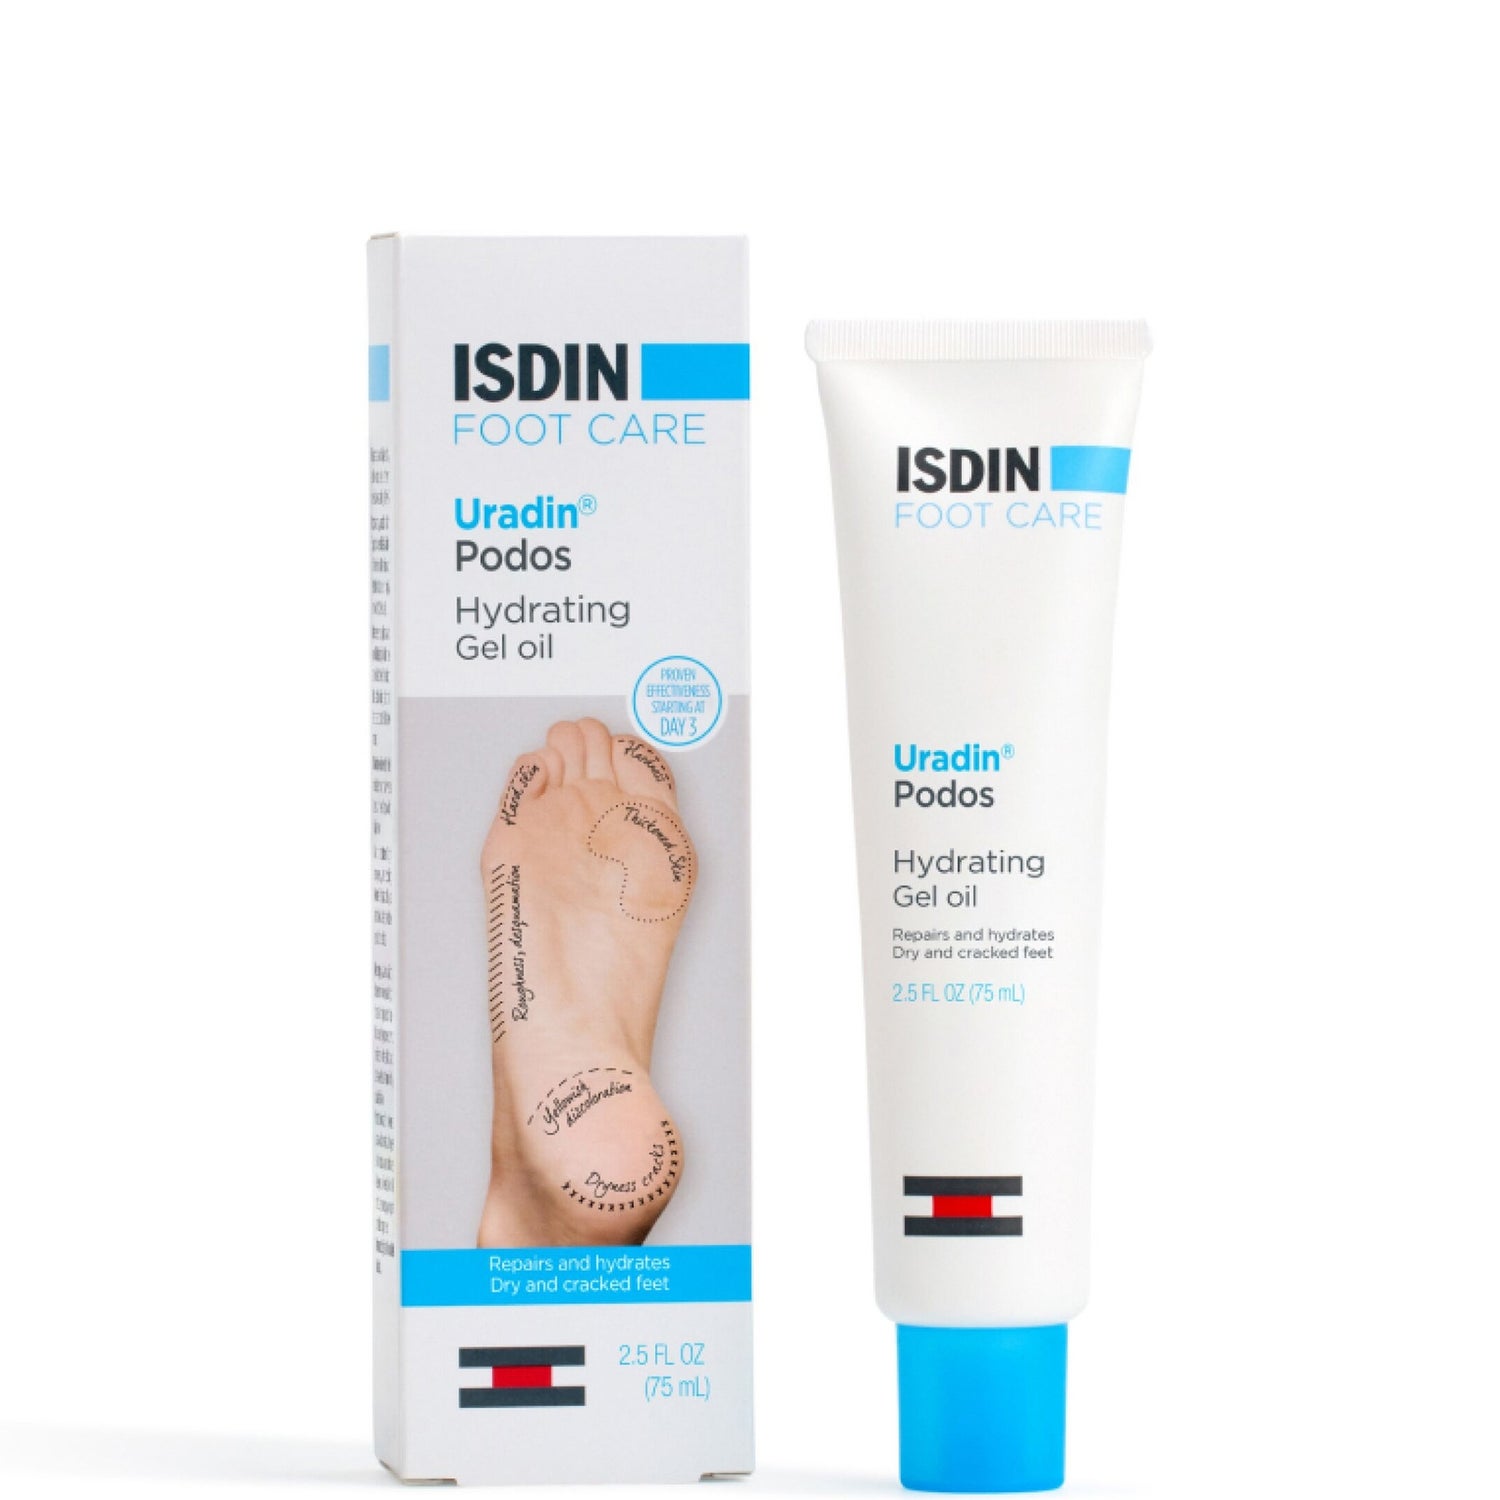 ISDIN Uradin Podos Gel-Oil Moisturizing Gel with 10% Urea for Dry Feet 2.5 fl. oz